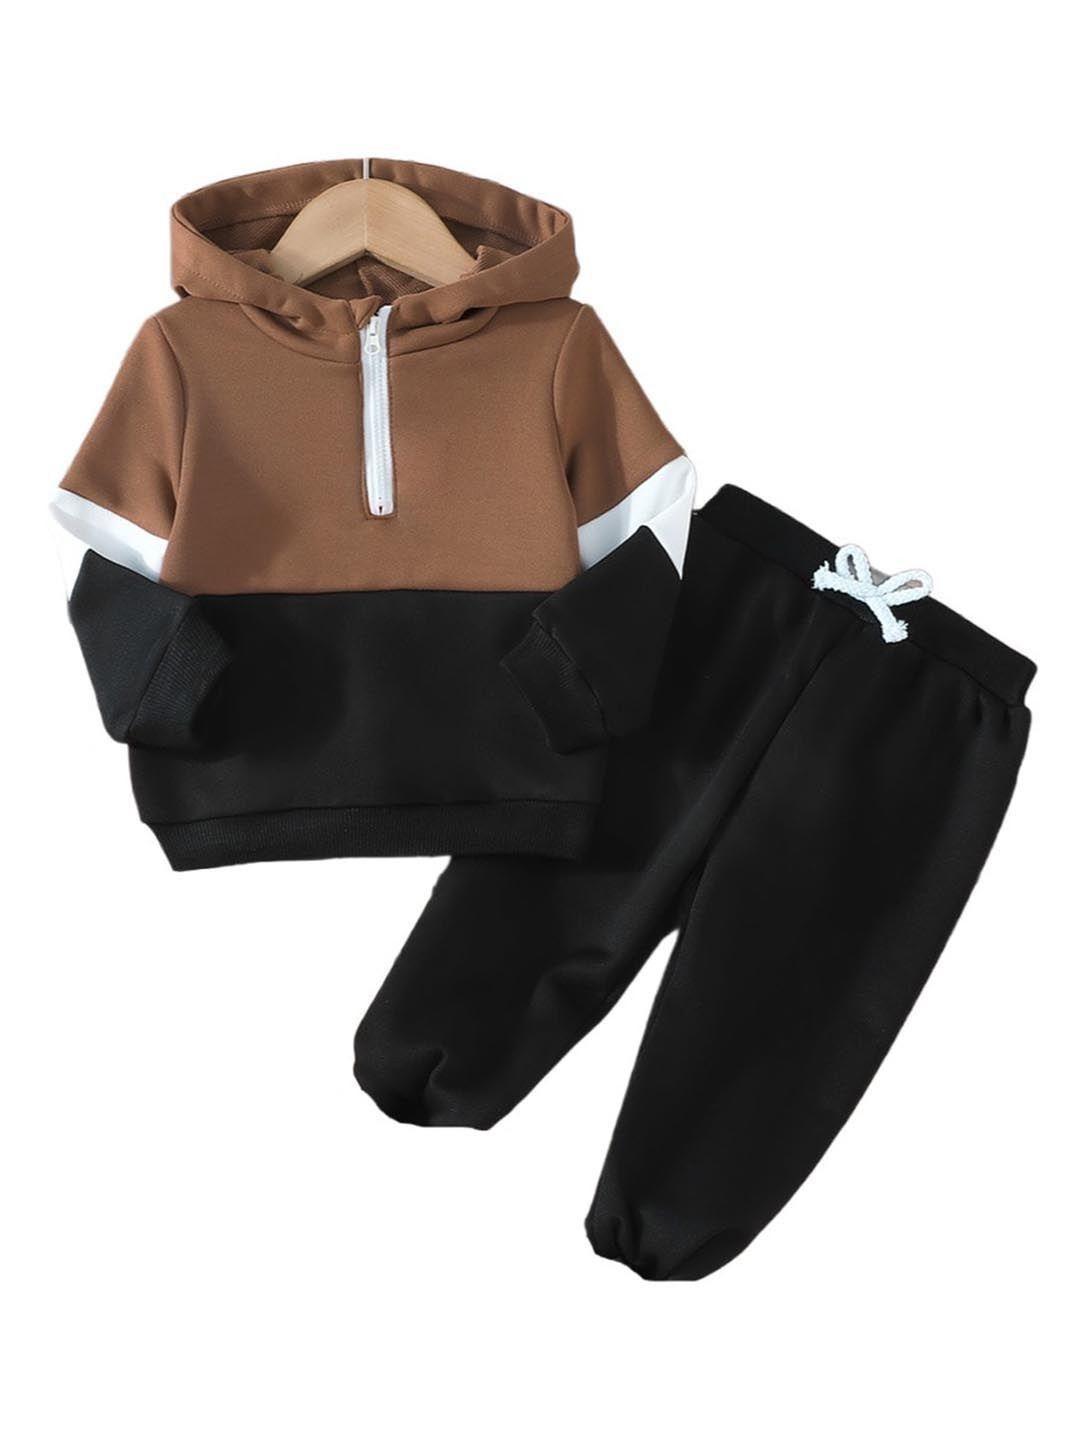 stylecast boys brown & black colourblocked sweatshirt with pyjamas